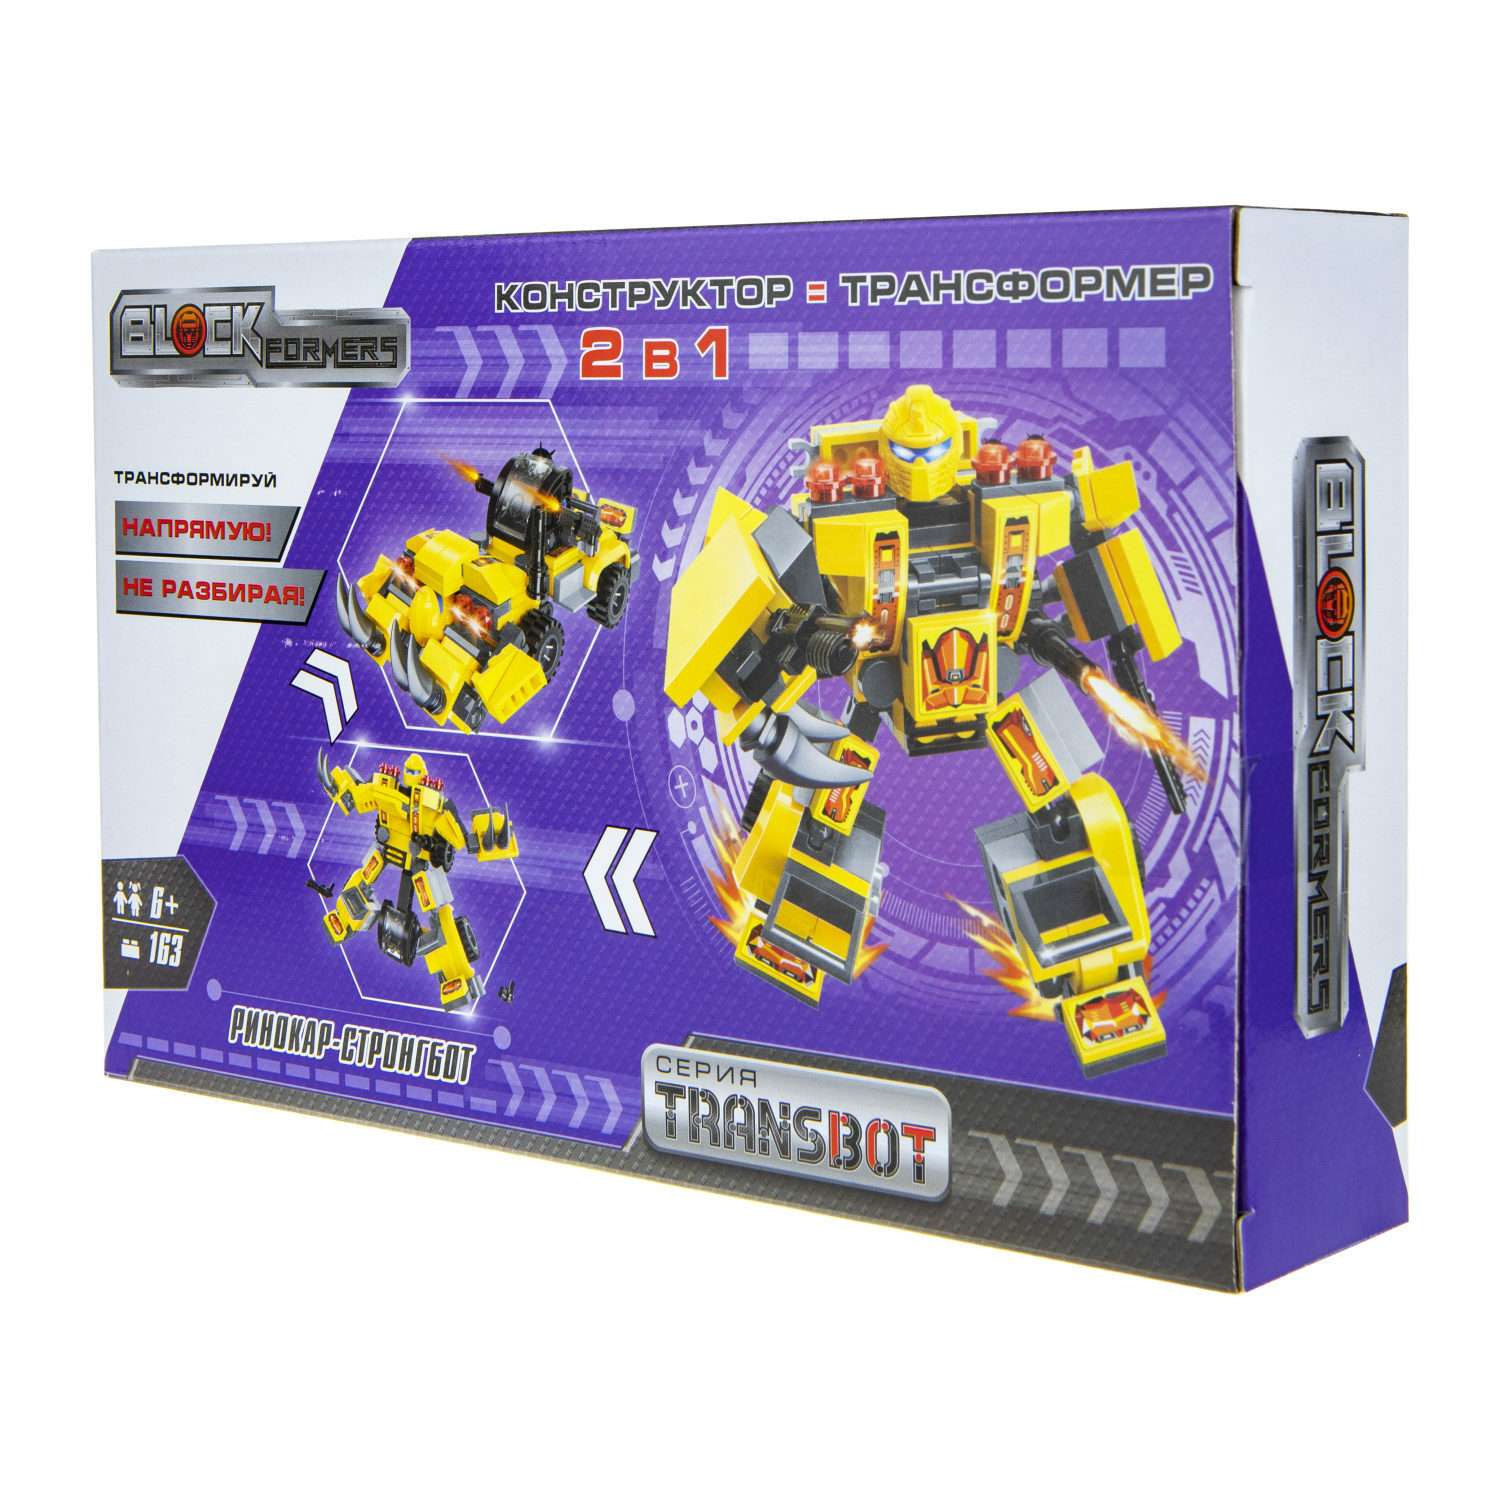 Конструктор Blockformers Transbot Ринокар и Стронгбот - фото 5